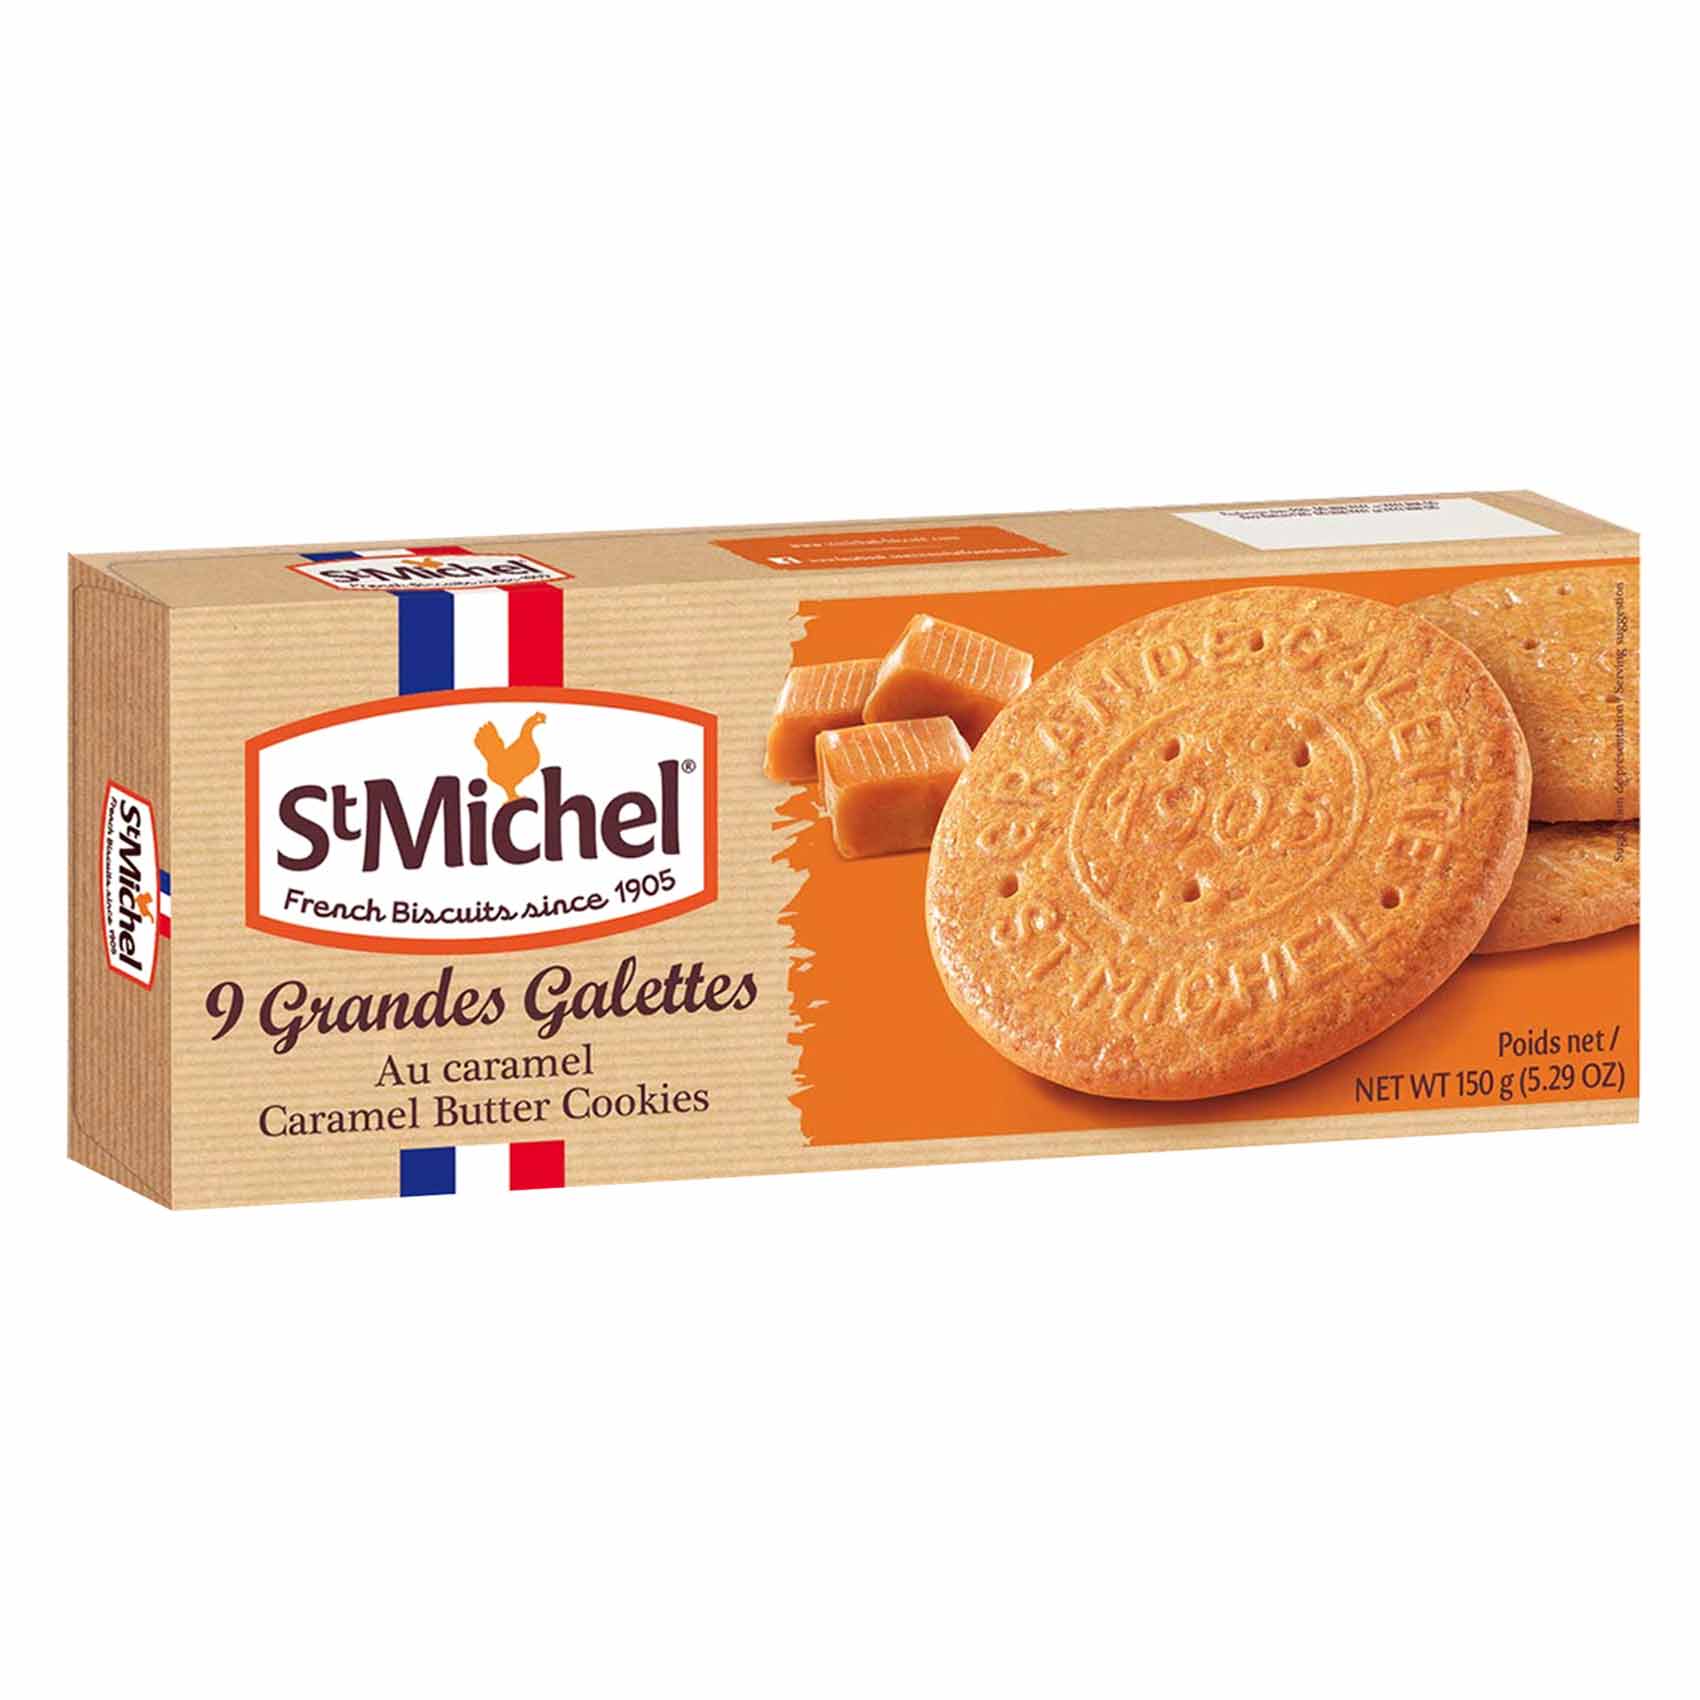 St Michel GRandes Galettes Caramel Butter Biscuits 150GR